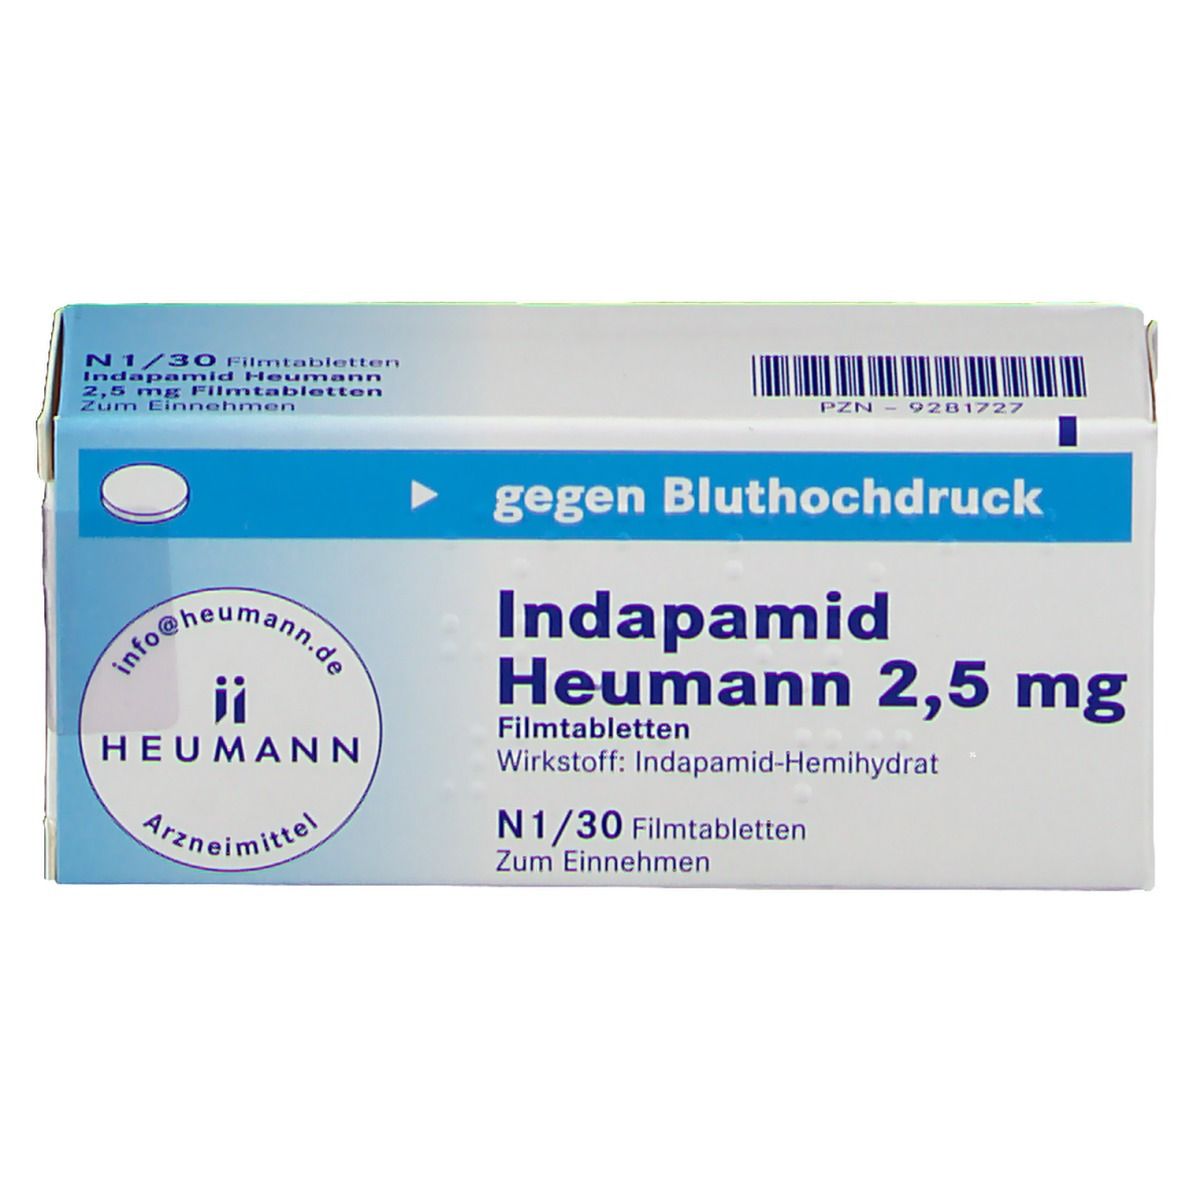 Indapamid Heumann 2,5 mg